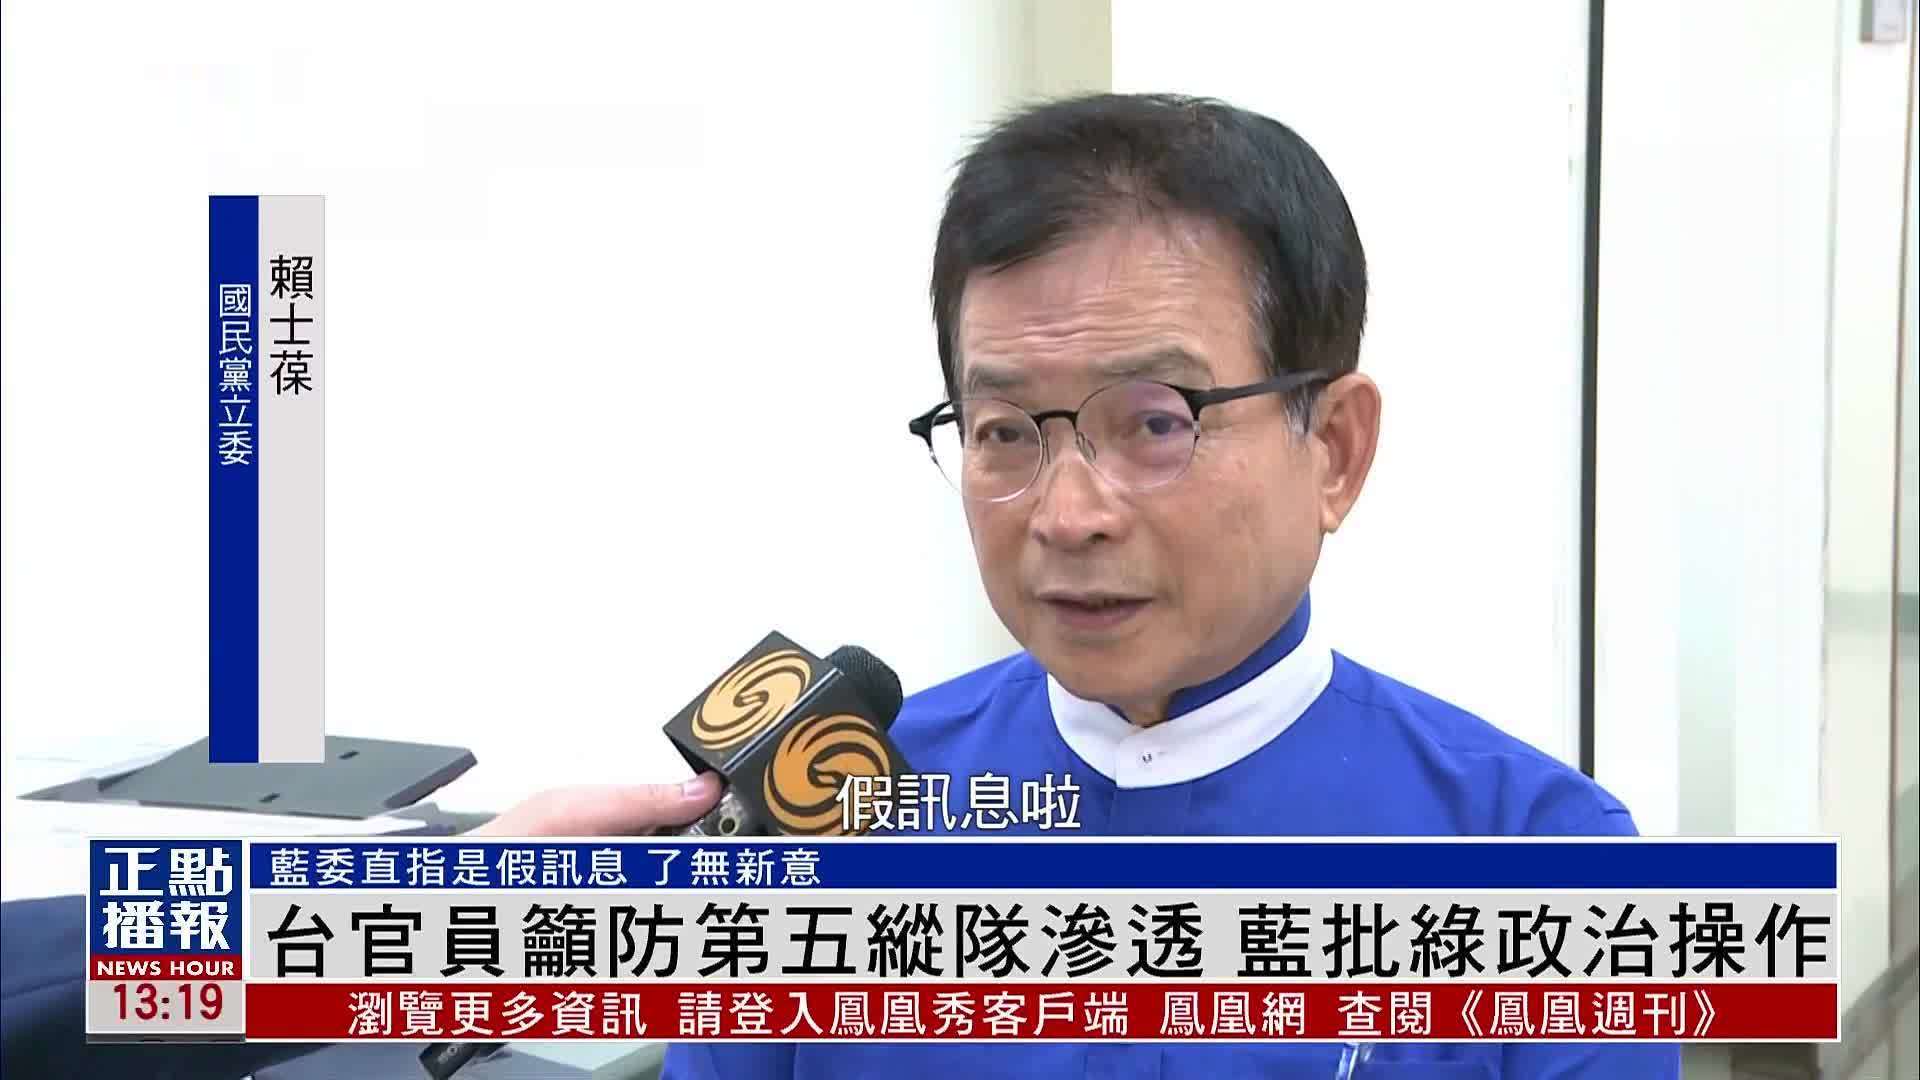 不具名台湾官员吁提防潜伏在台的第五纵队 蓝批绿政治操作